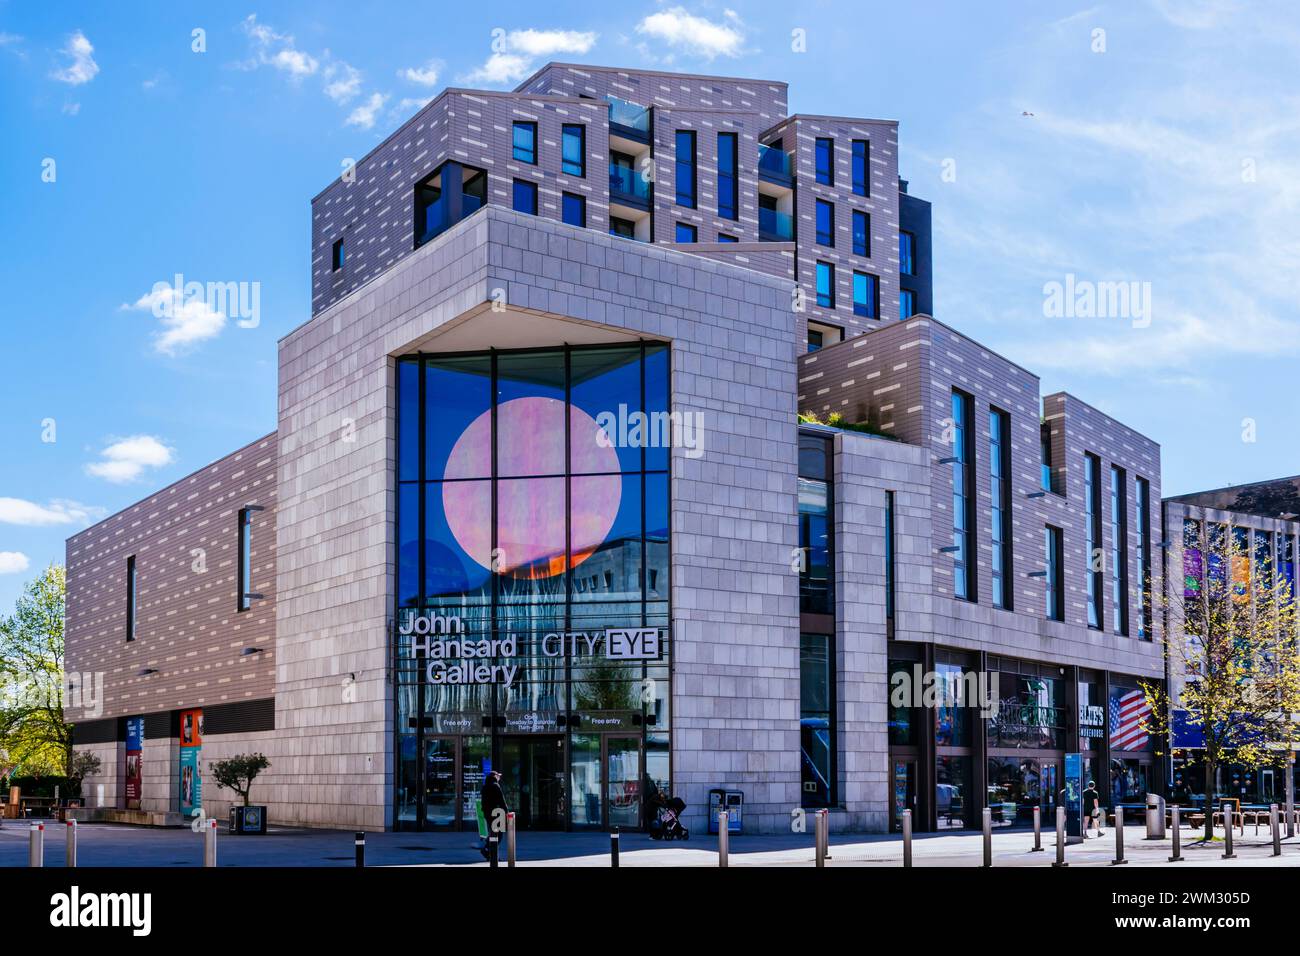 Die John Hansard Gallery ist eine Galerie für zeitgenössische bildende Kunst und Teil der University of Southampton. 2018 zog die Galerie an einen neuen Standort in Th Stockfoto